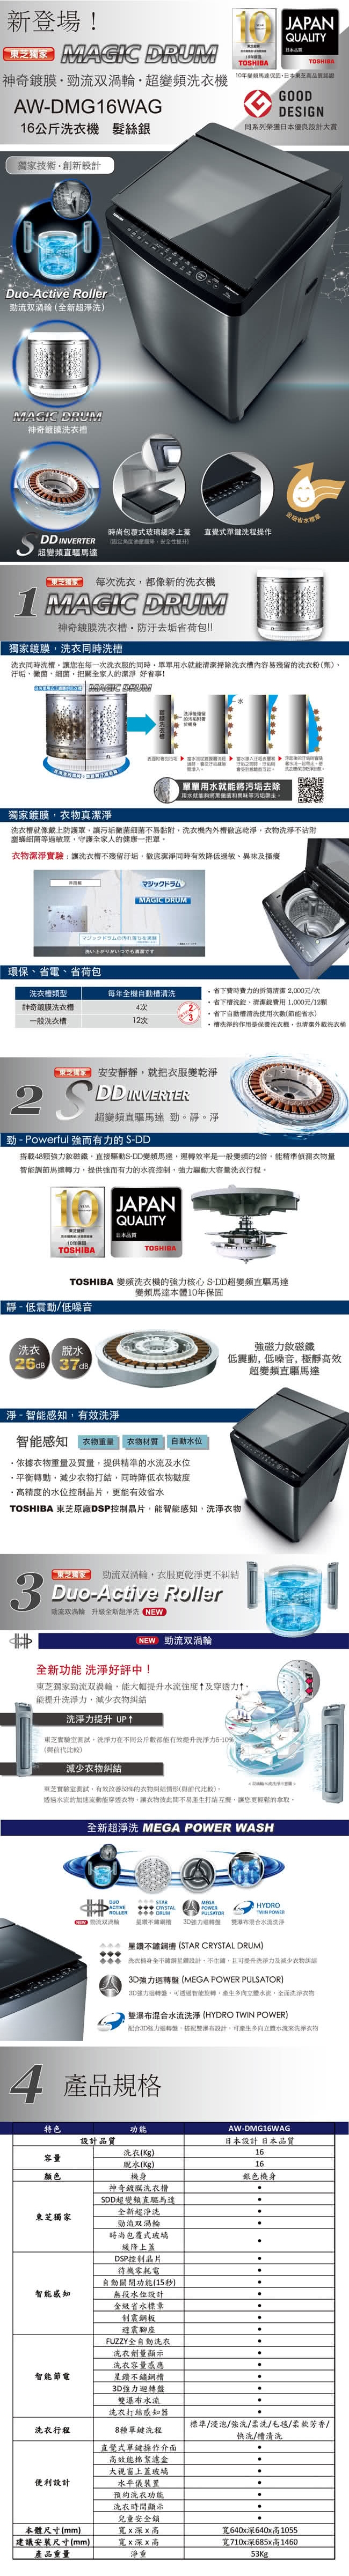 東芝 TOSHIBA 16KG 變頻直立式鍍膜洗衣機 AW-DMG16WAG